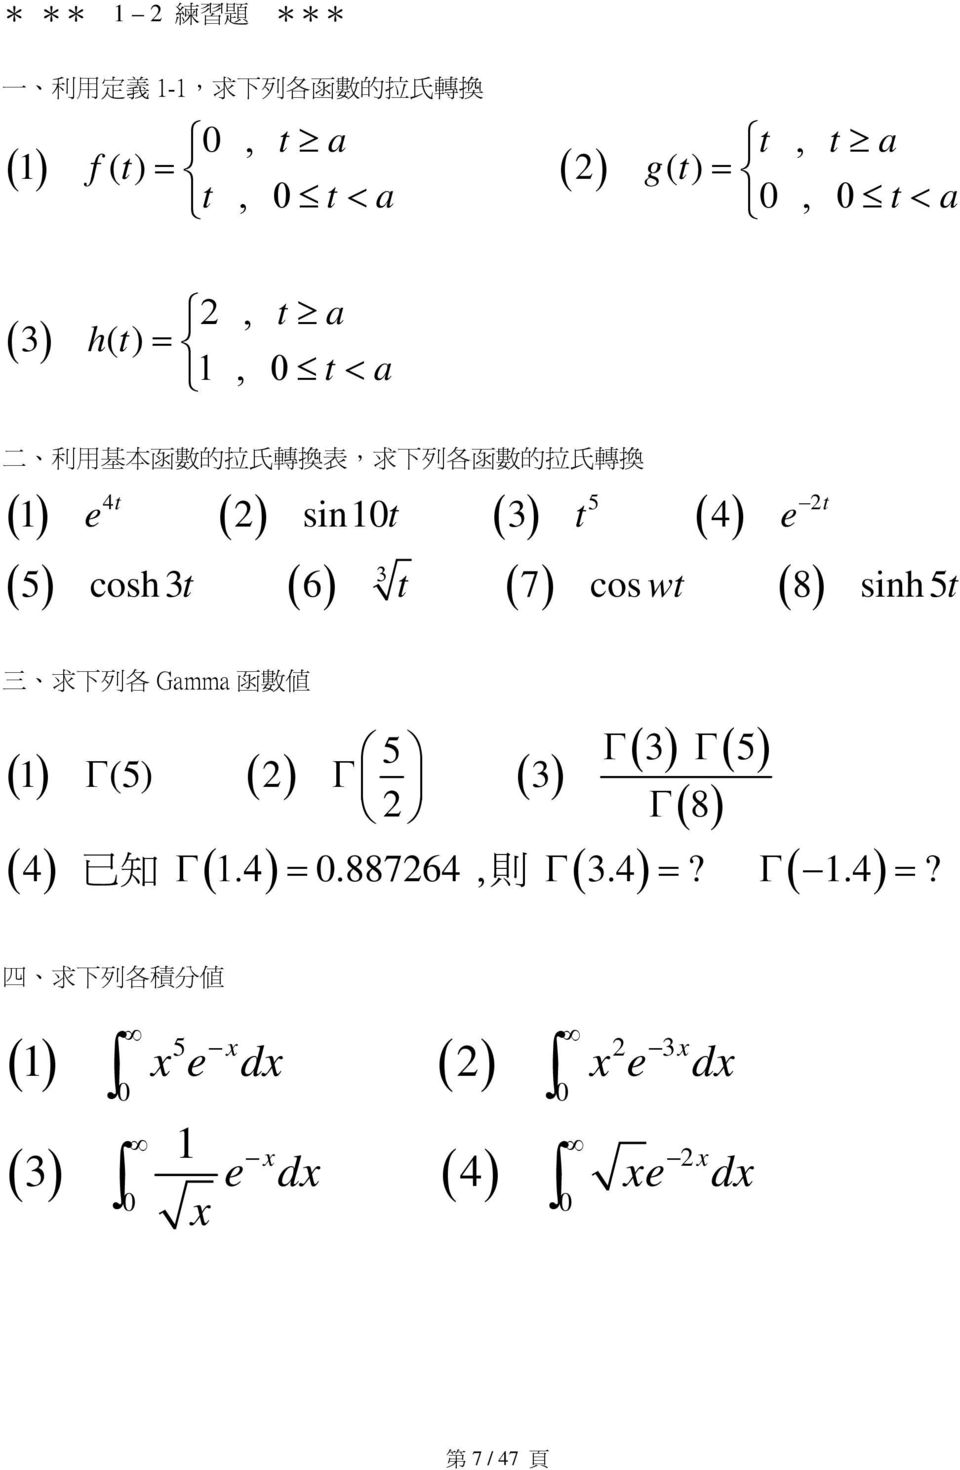 inh 5 三 求 下 列 各 Gmm 函 數 值 5 Γ ( 3) Γ( 5) () Γ (5) Γ ( 3) Γ( 8) 已 知 則 4 Γ.4.88764, Γ 3.